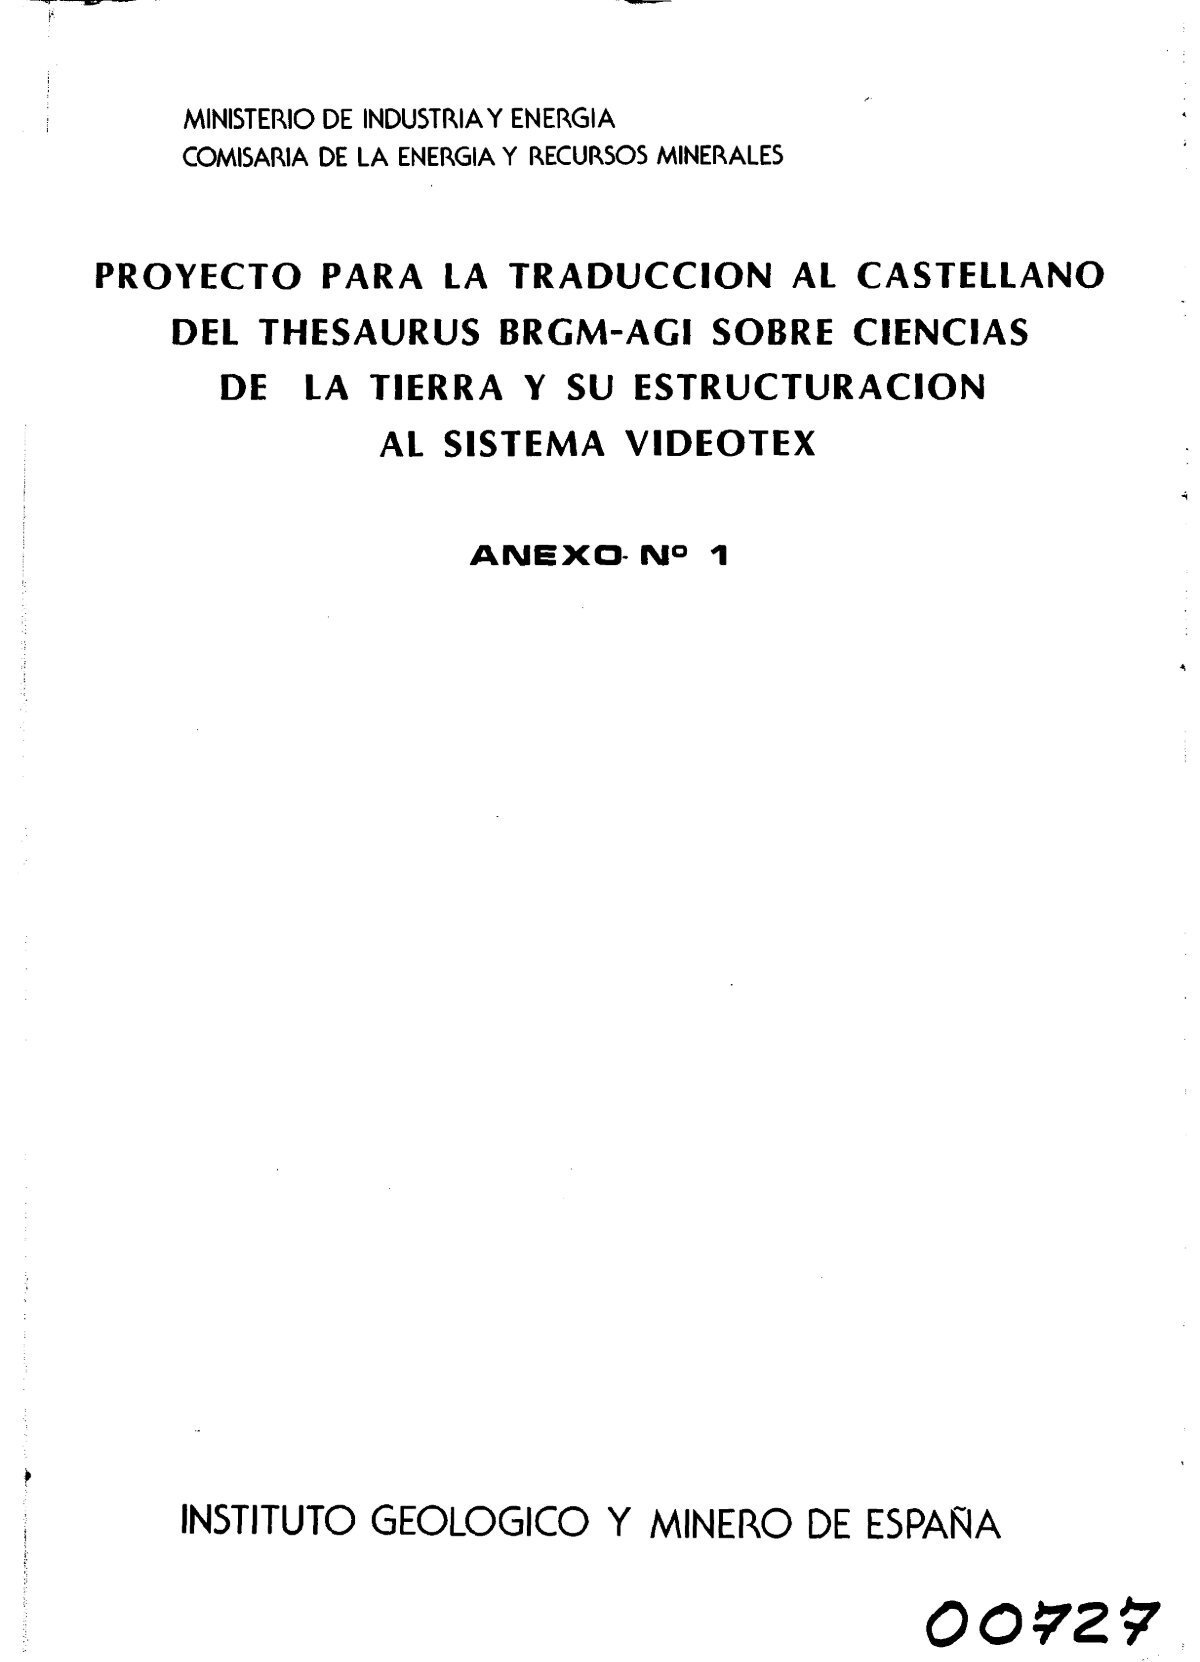 Anexo 1 (PDF) - Instituto GeolÃ³gico y Minero de EspaÃ±a